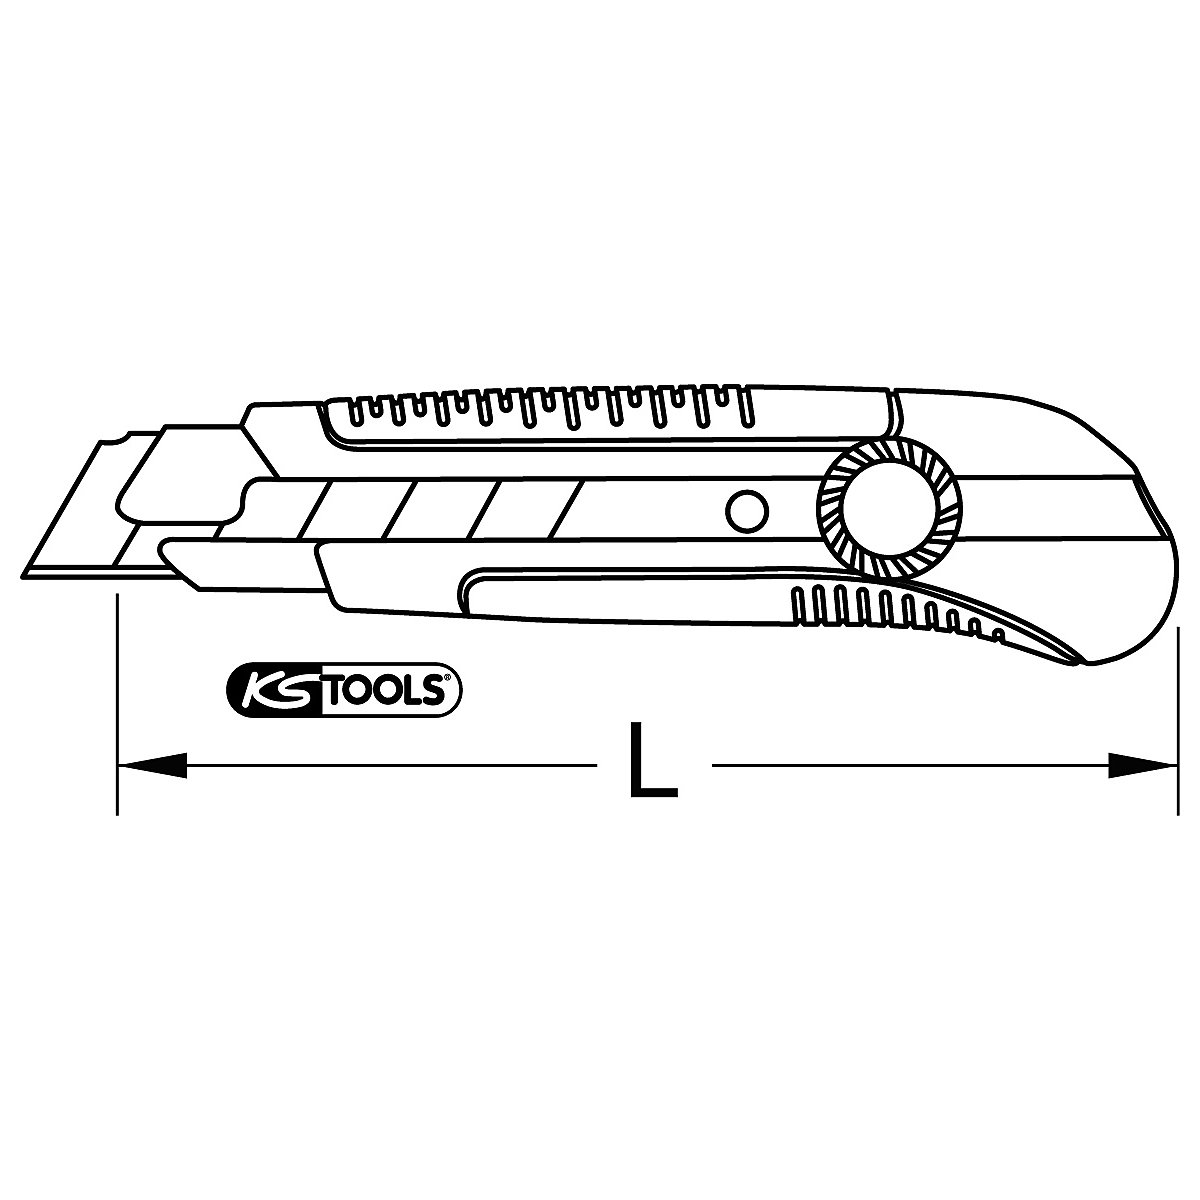 X-ato confortável com lâmina destacável – KS Tools (Imagem do produto 3)-2